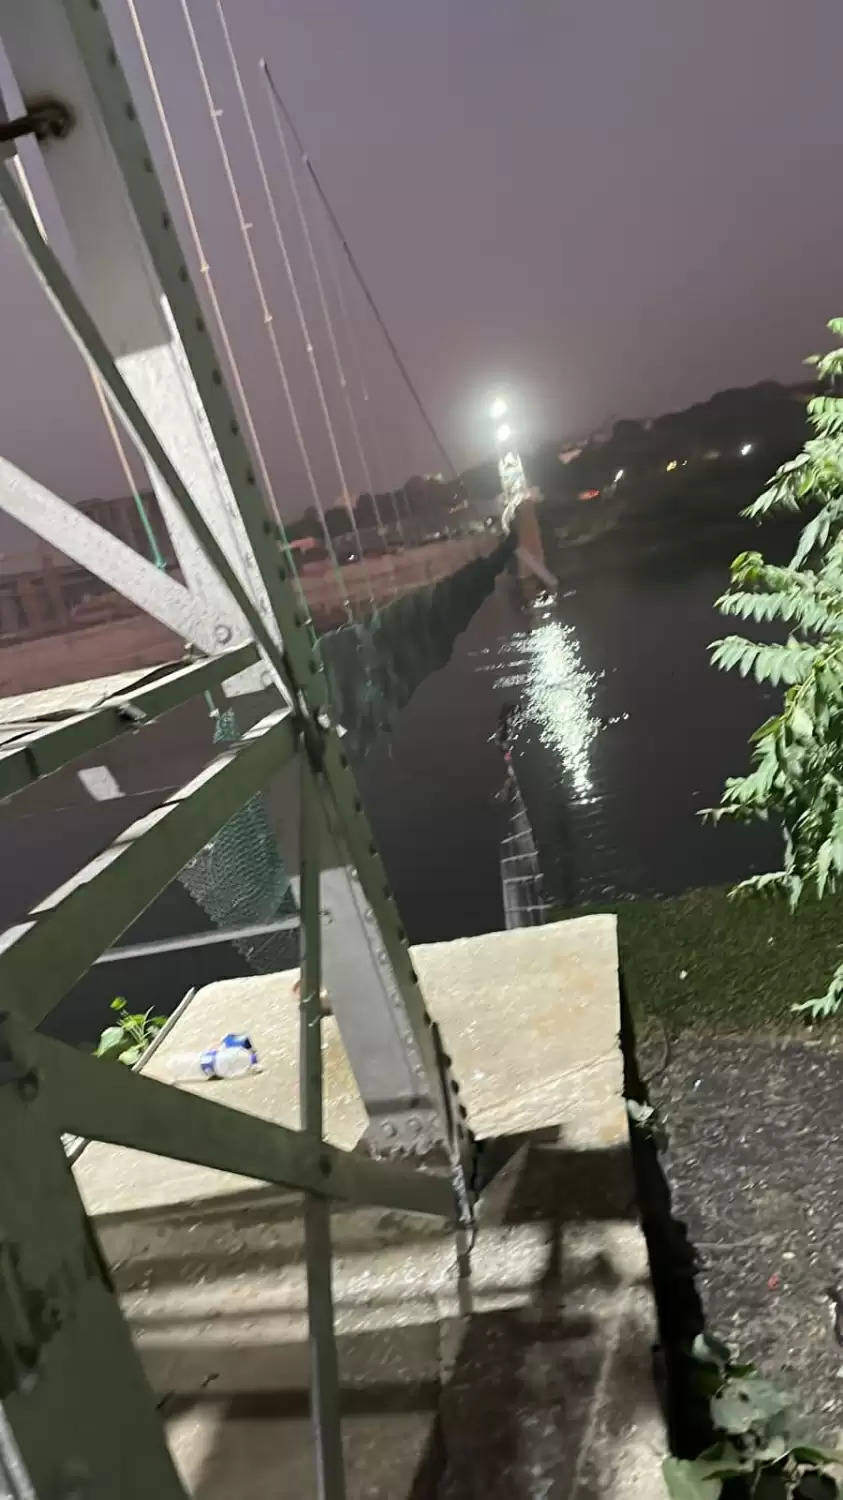 Morbi cable bridge collapse